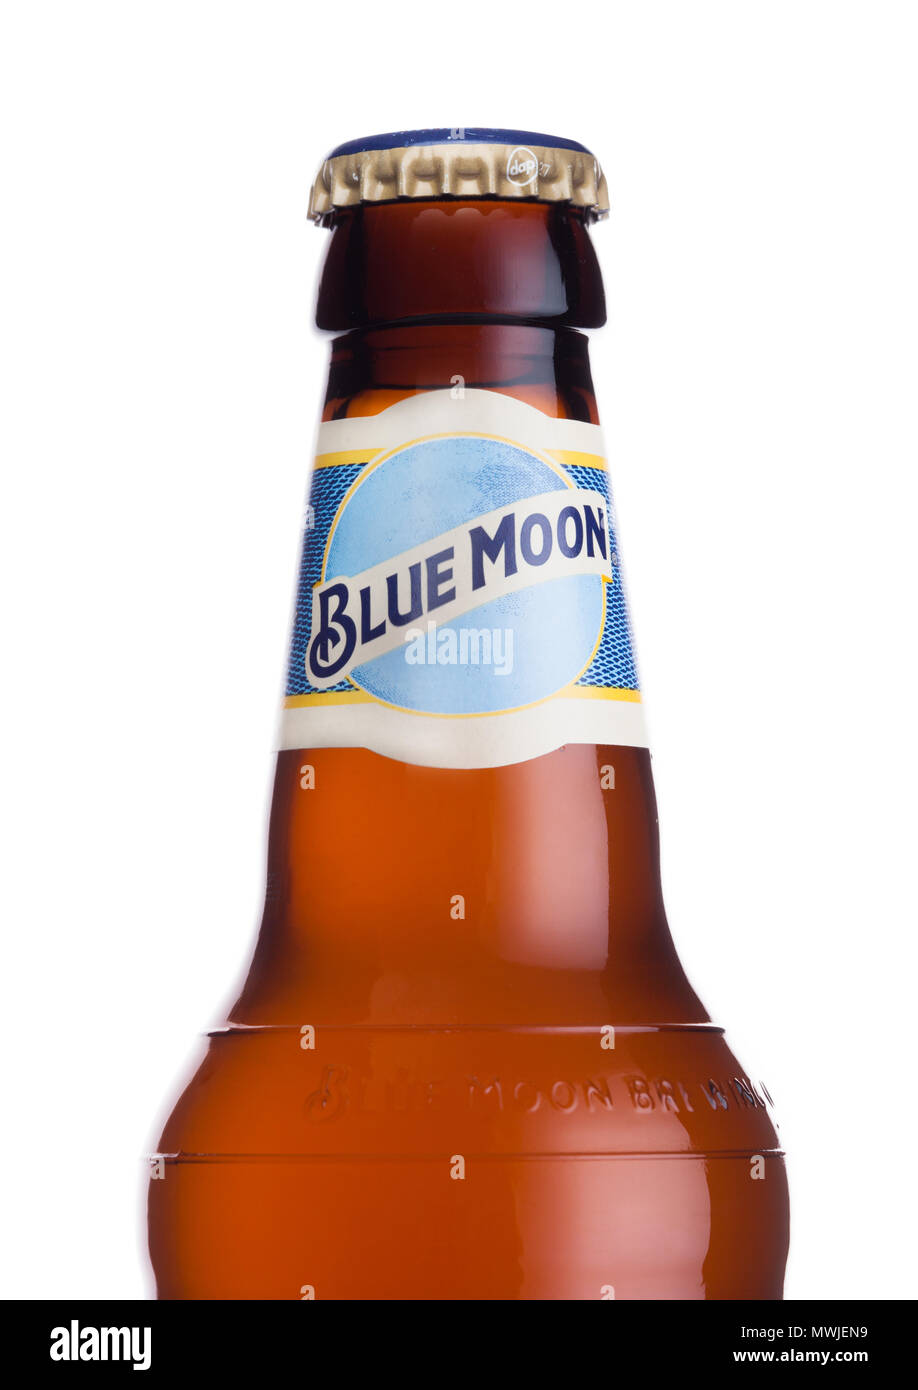 LONDON, UK, 01. JUNI 2018: Flasche Blue Moon belgischen weißes Bier, gebraut von MillerCoors auf weißem Hintergrund. Stockfoto